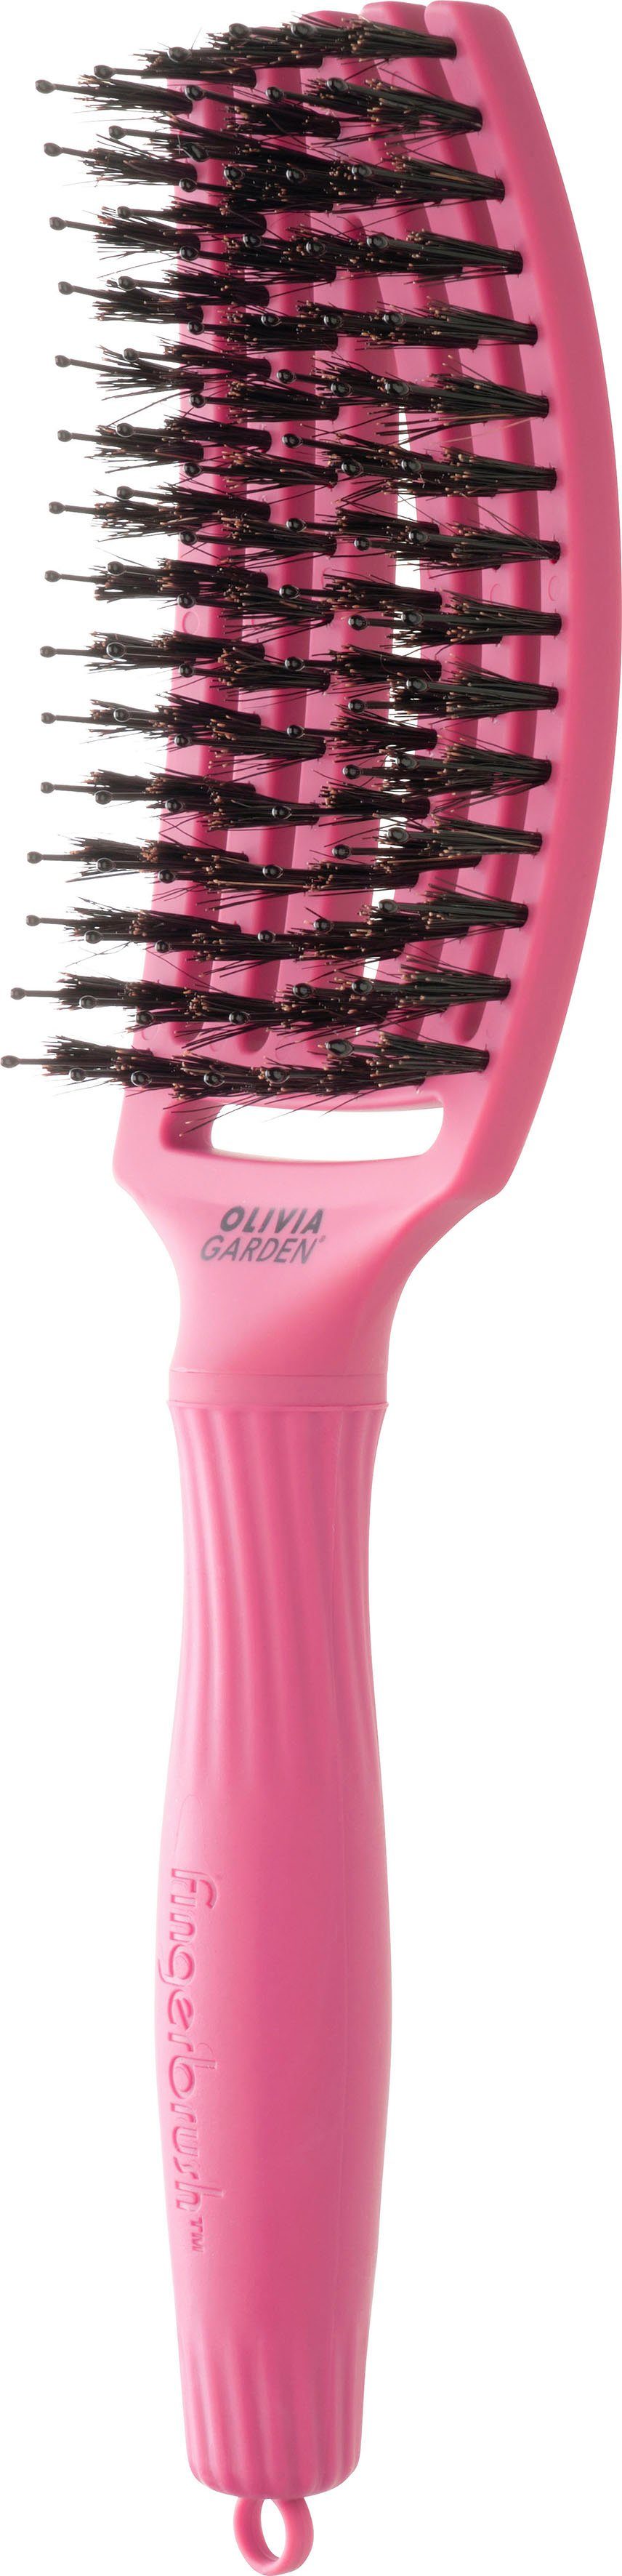 OLIVIA GARDEN Haarbürste Fingerbrush Combo Medium pink